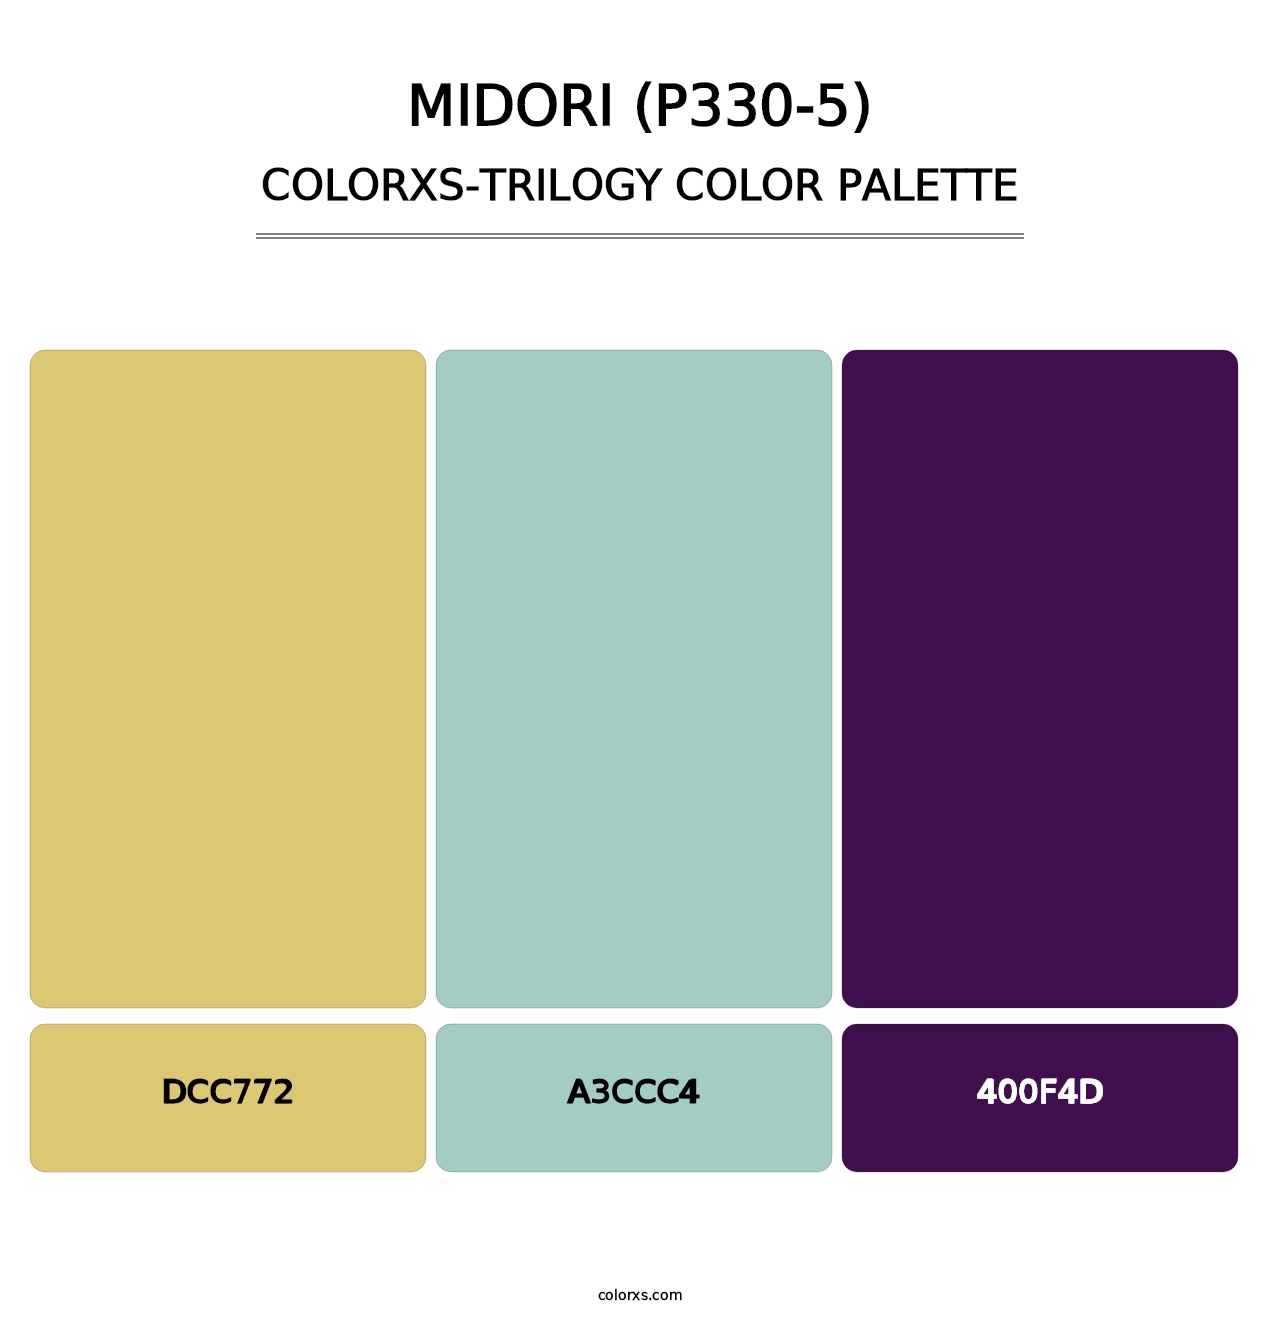 Midori (P330-5) - Colorxs Trilogy Palette